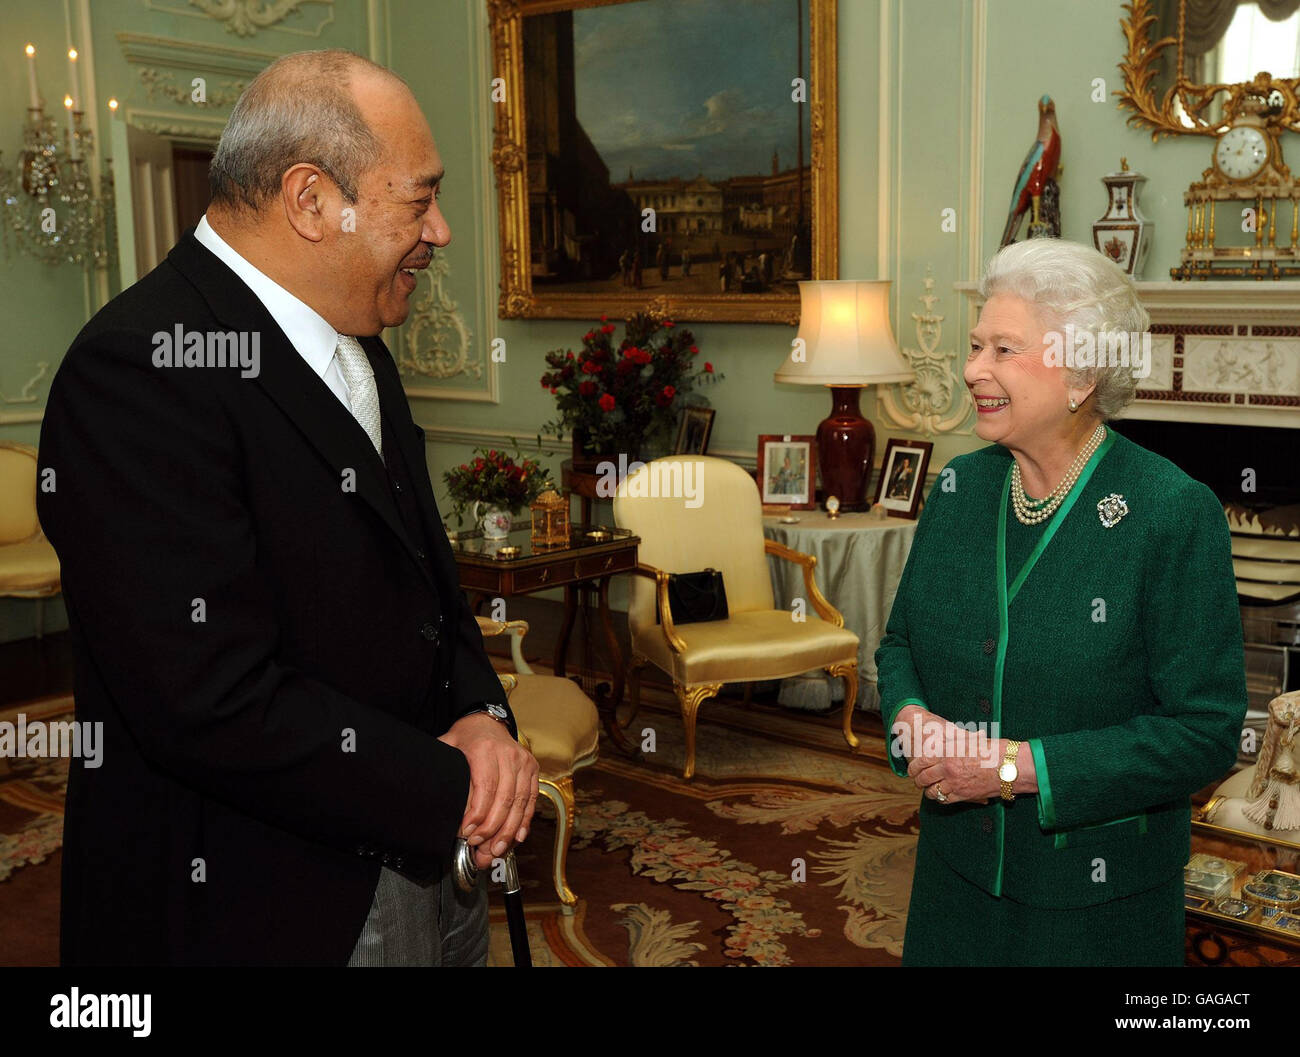 La Reina Isabel II se mueve de la mano con el Rey George Tupou V de Tonga, durante una reunión privada en el Palacio de Buckingham. Foto de stock